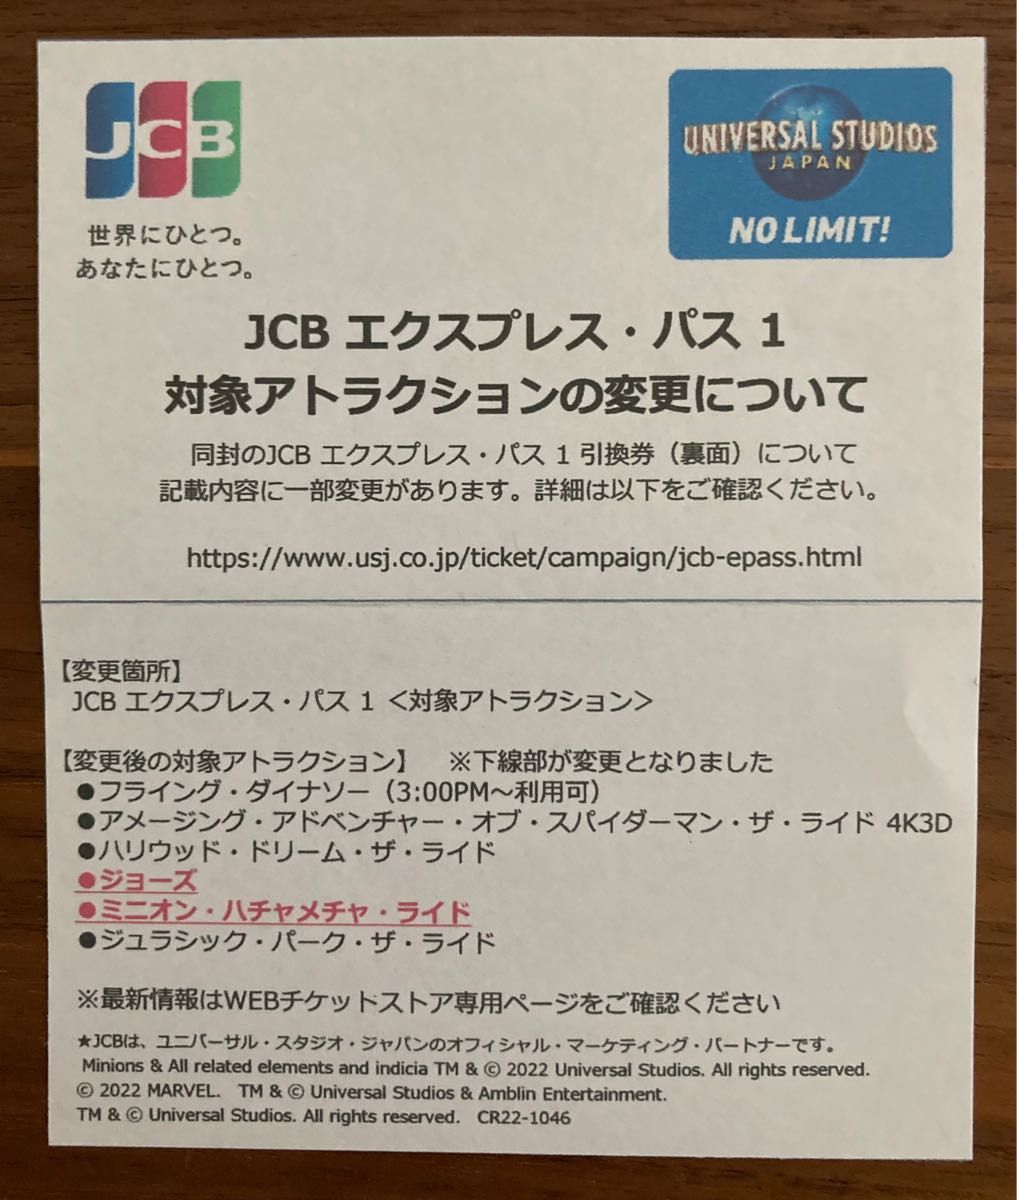 ユニバーサル・スタジオ・ジャパン USJ エクスプレス・パス1 引換券 4